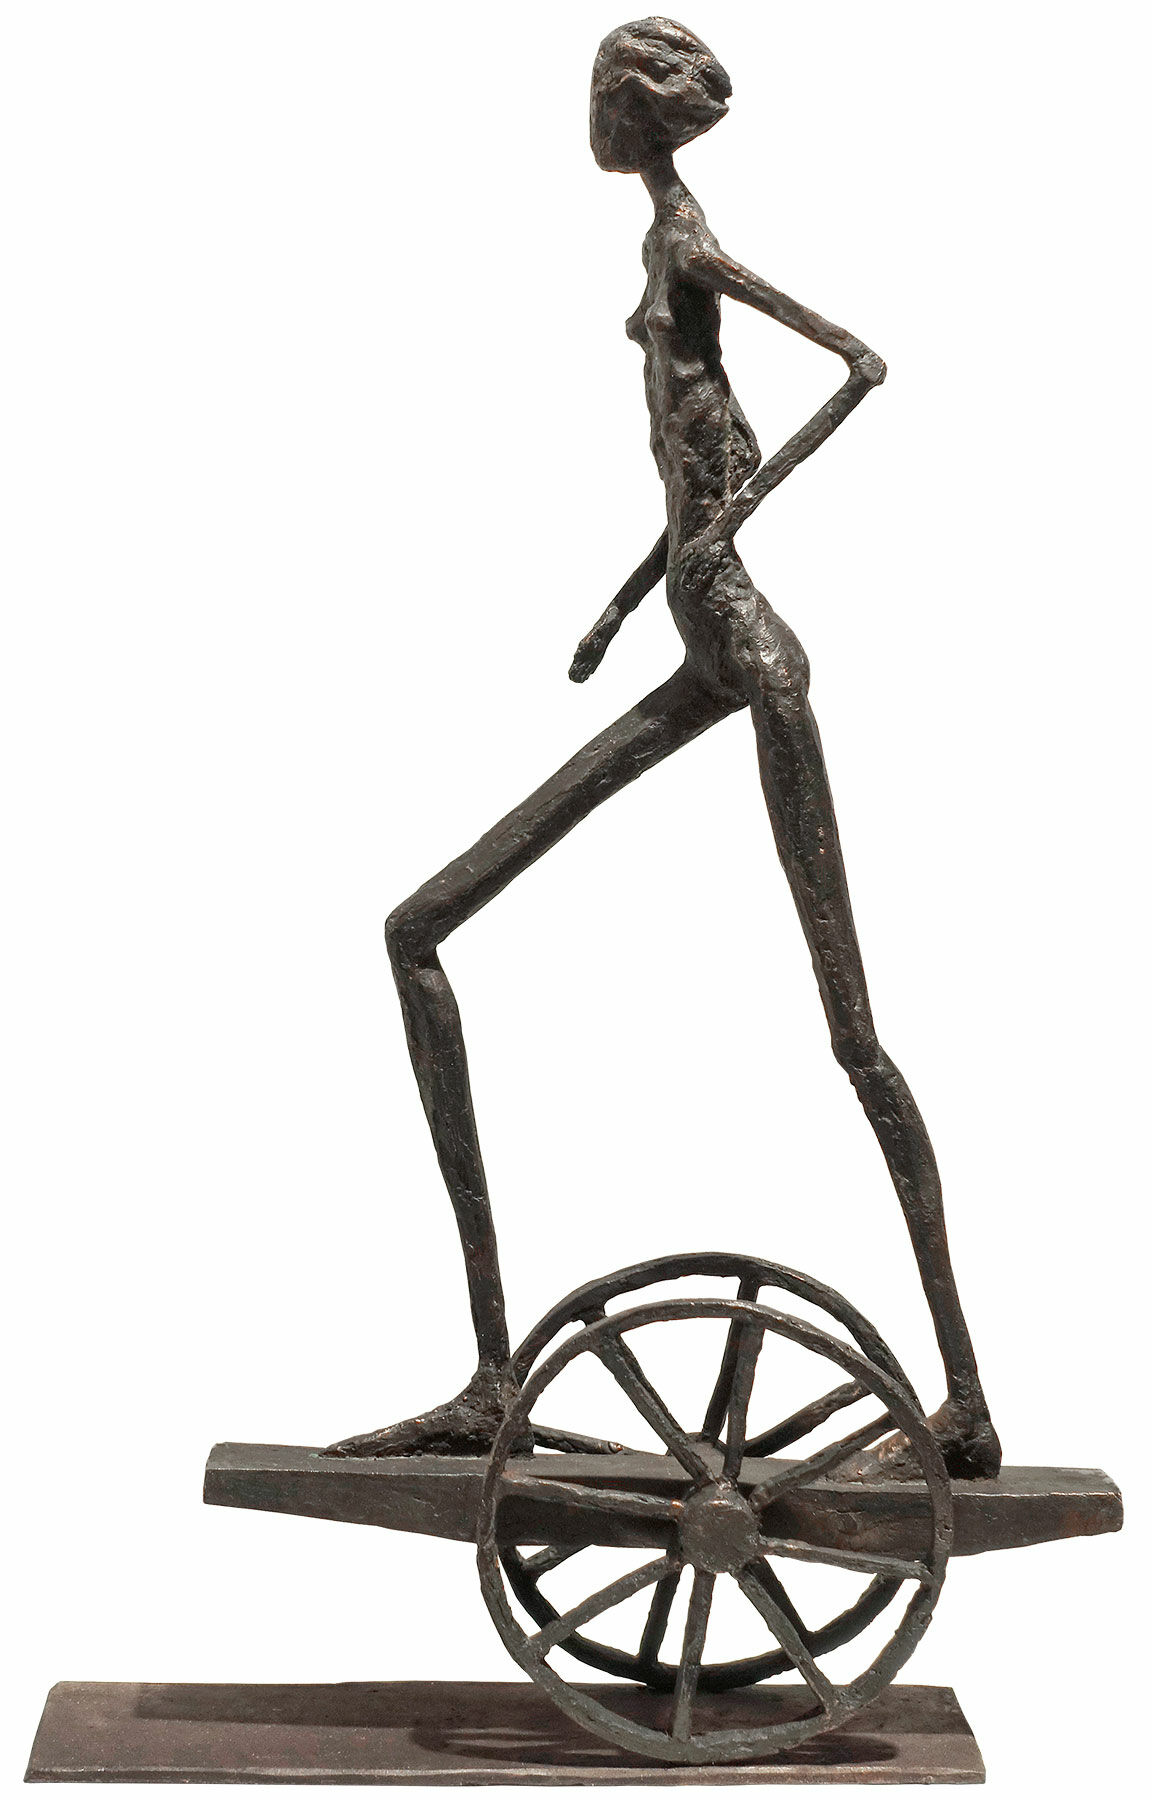 Skulptur "Rush" (2018), bronze von Sibylle Waldhausen